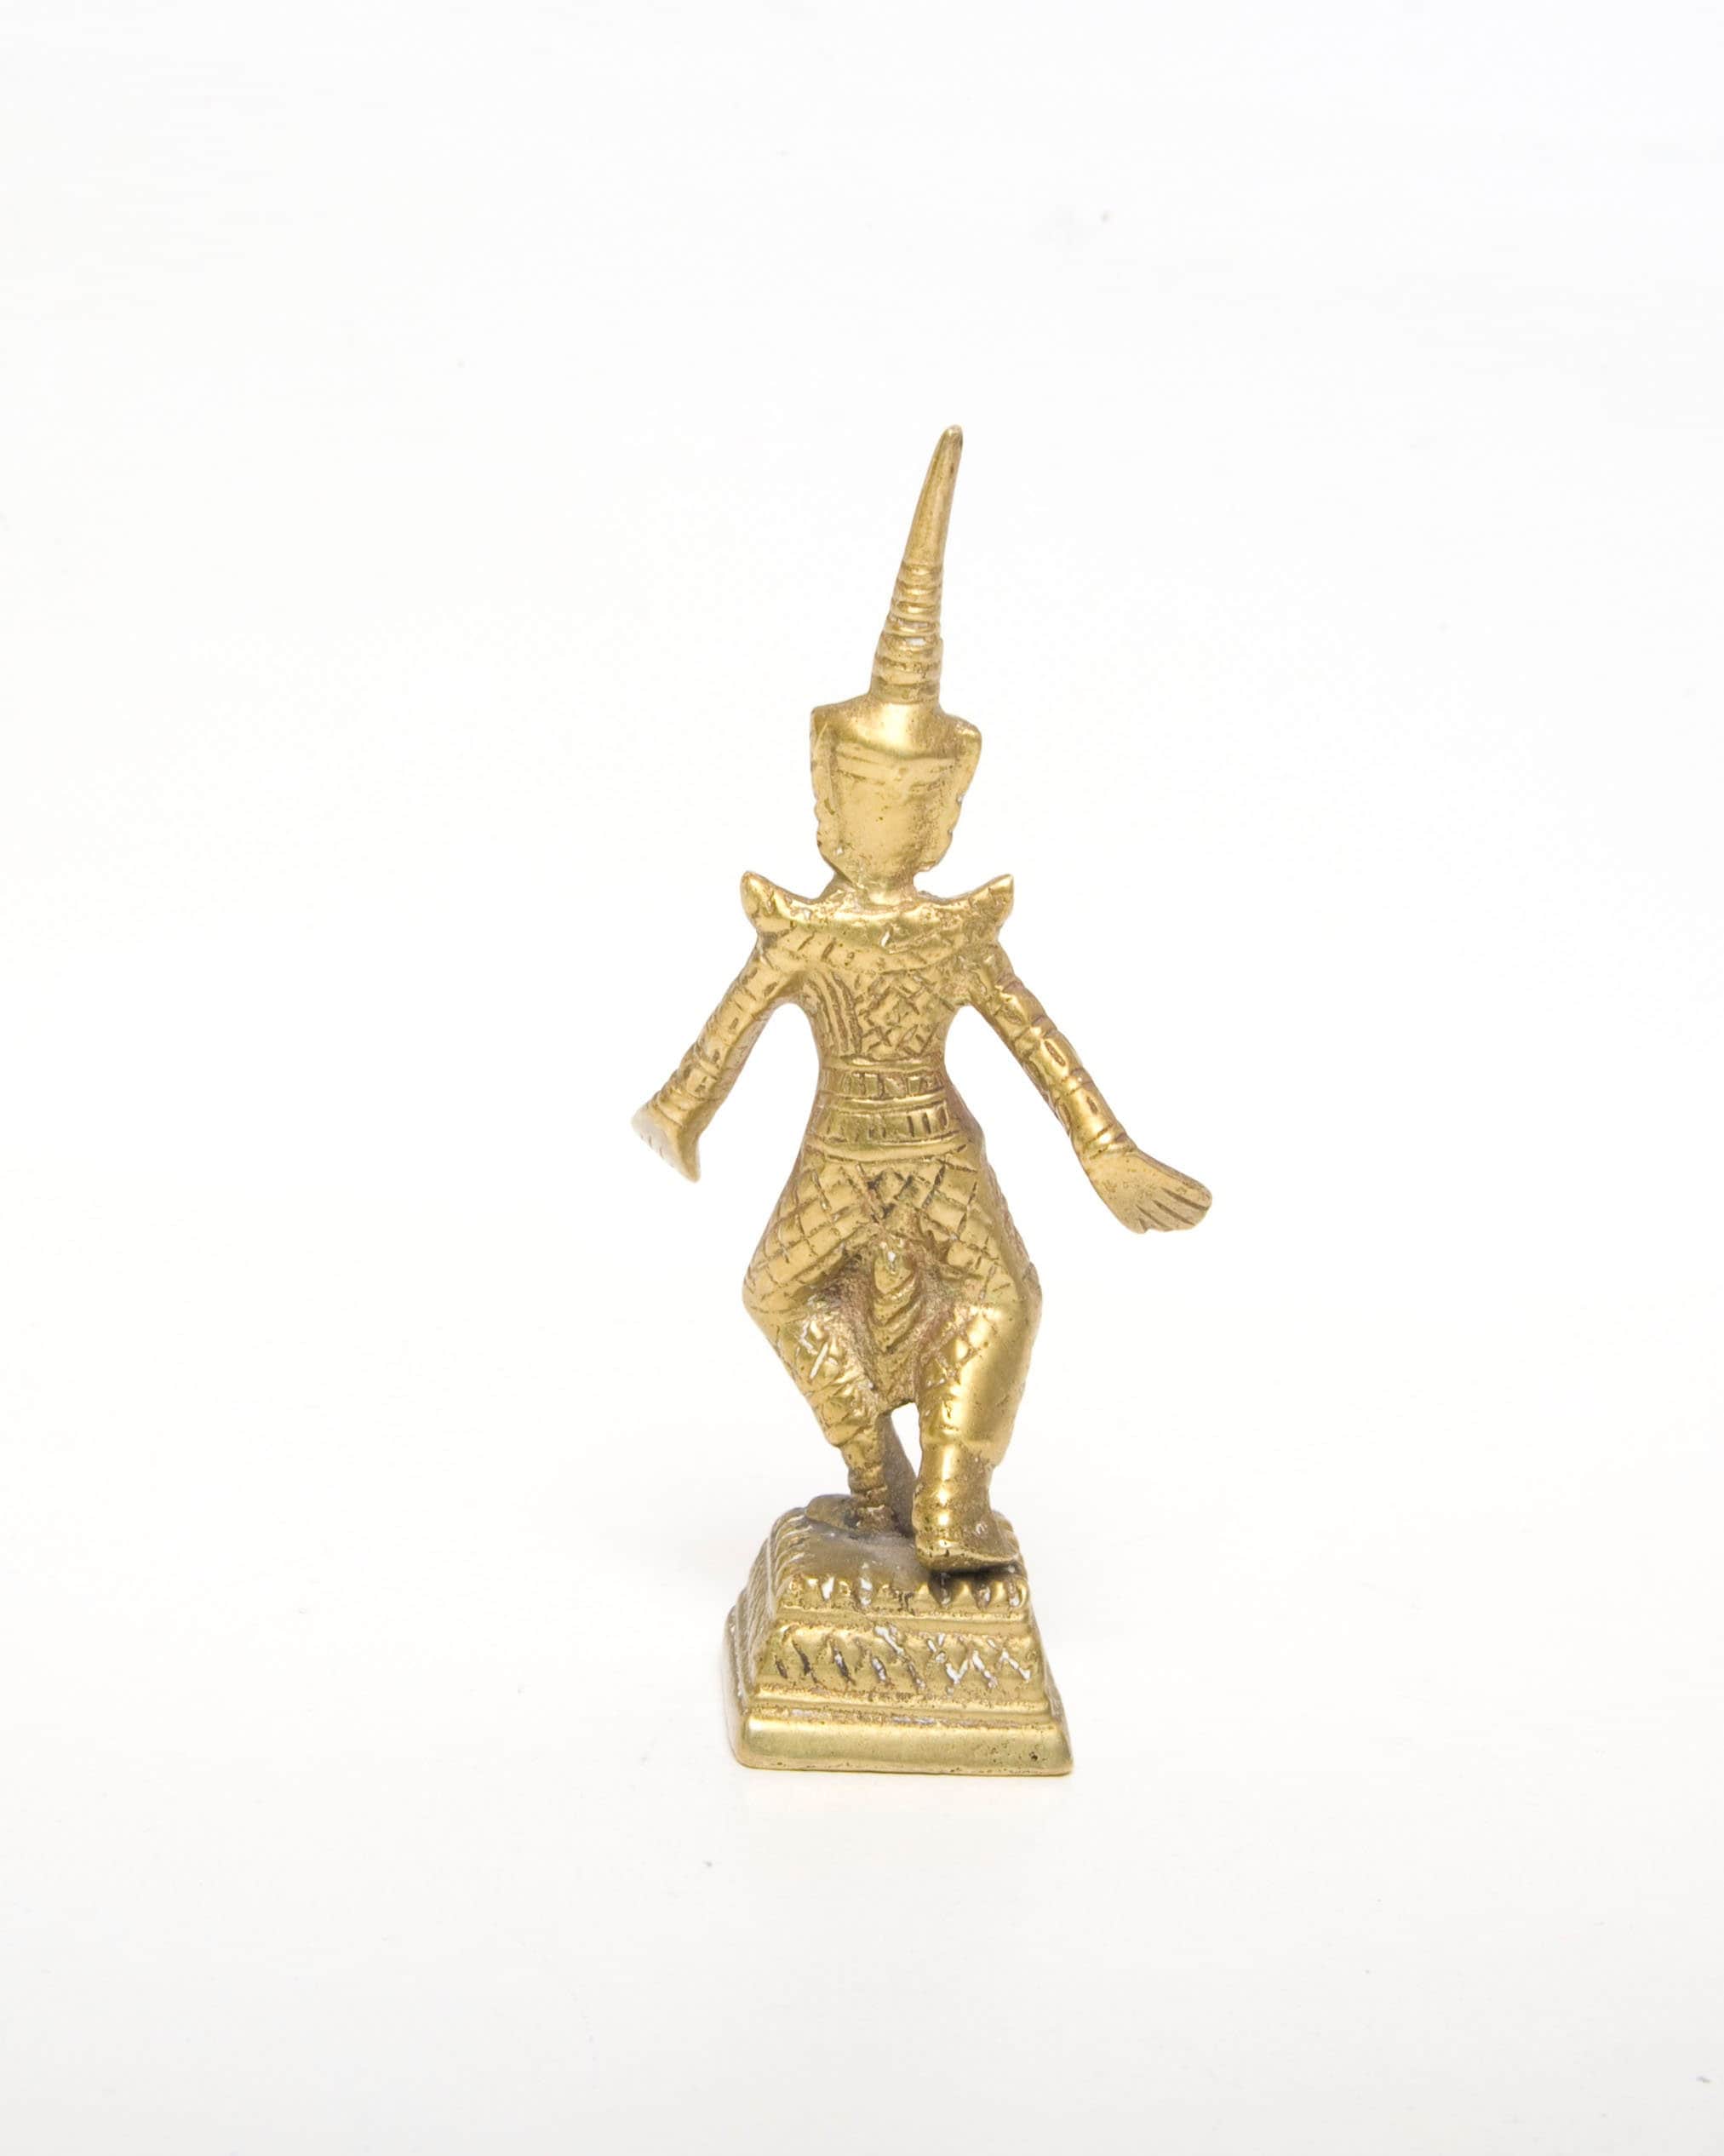 Vintage Brass Thai Figurine Temple Dancer Souvenir From Thailand